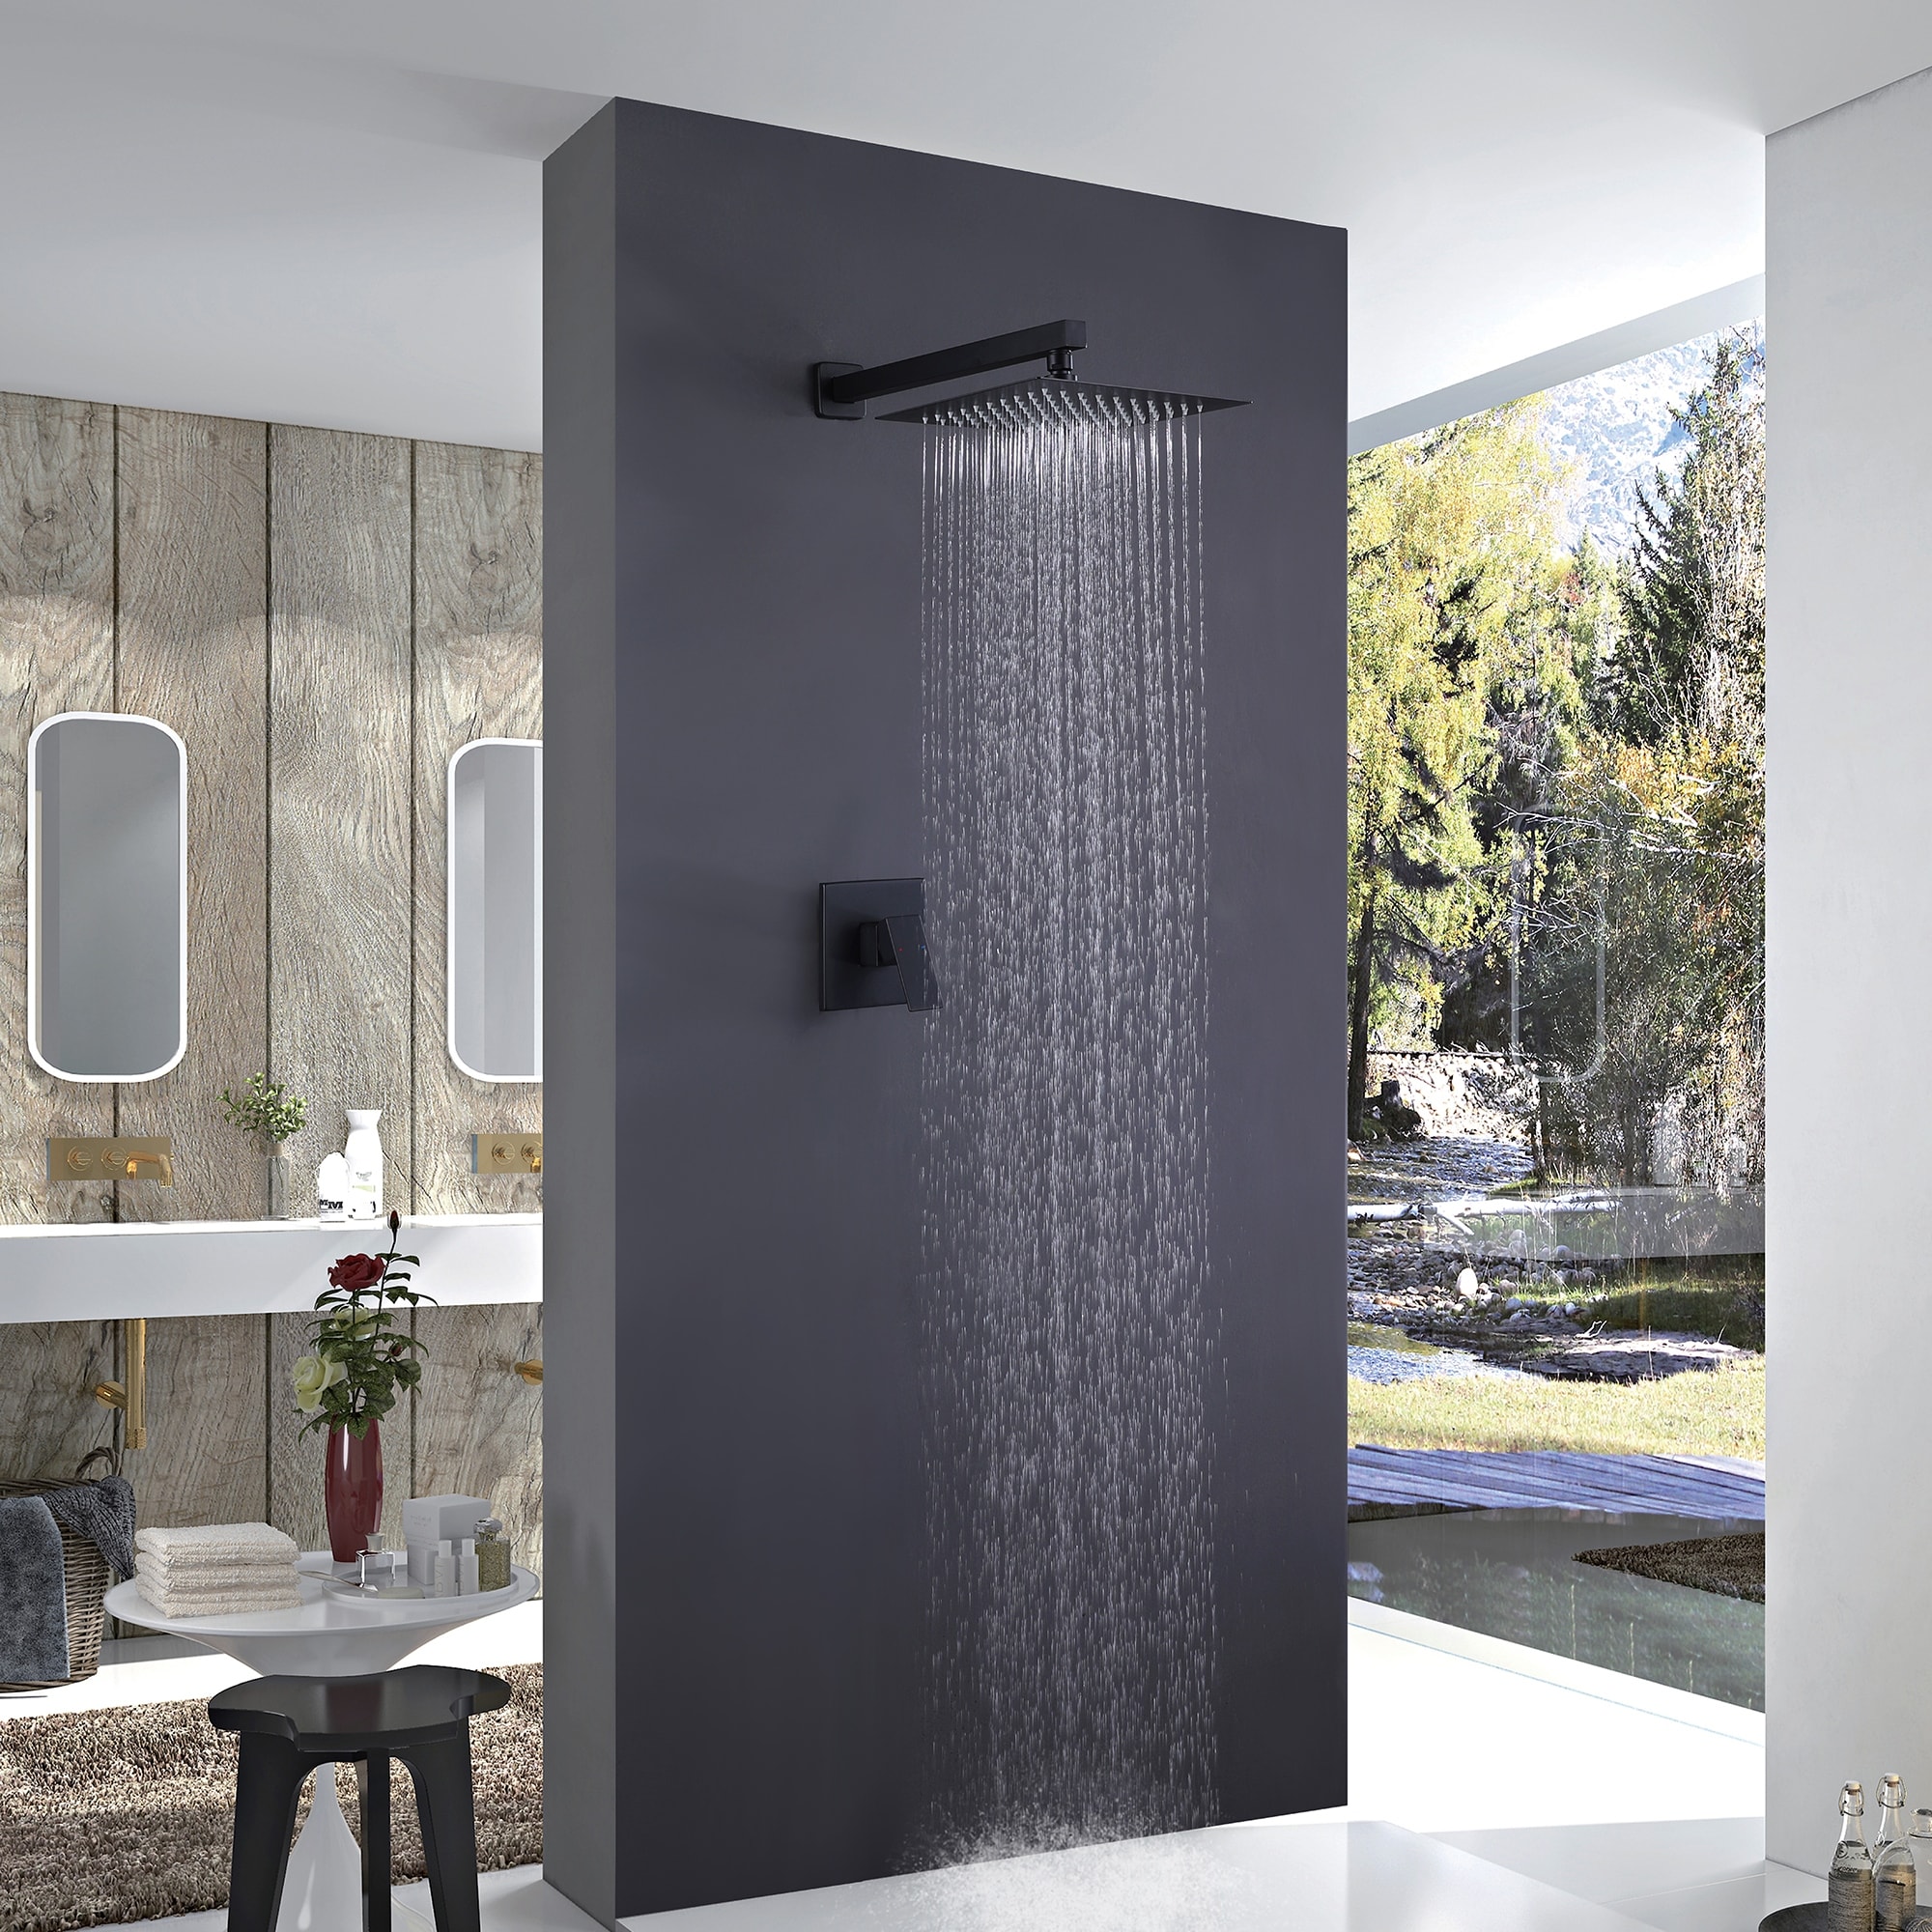 Square Dual Handle 2 Function Concealed Bathroom Shower Set - Matte Black